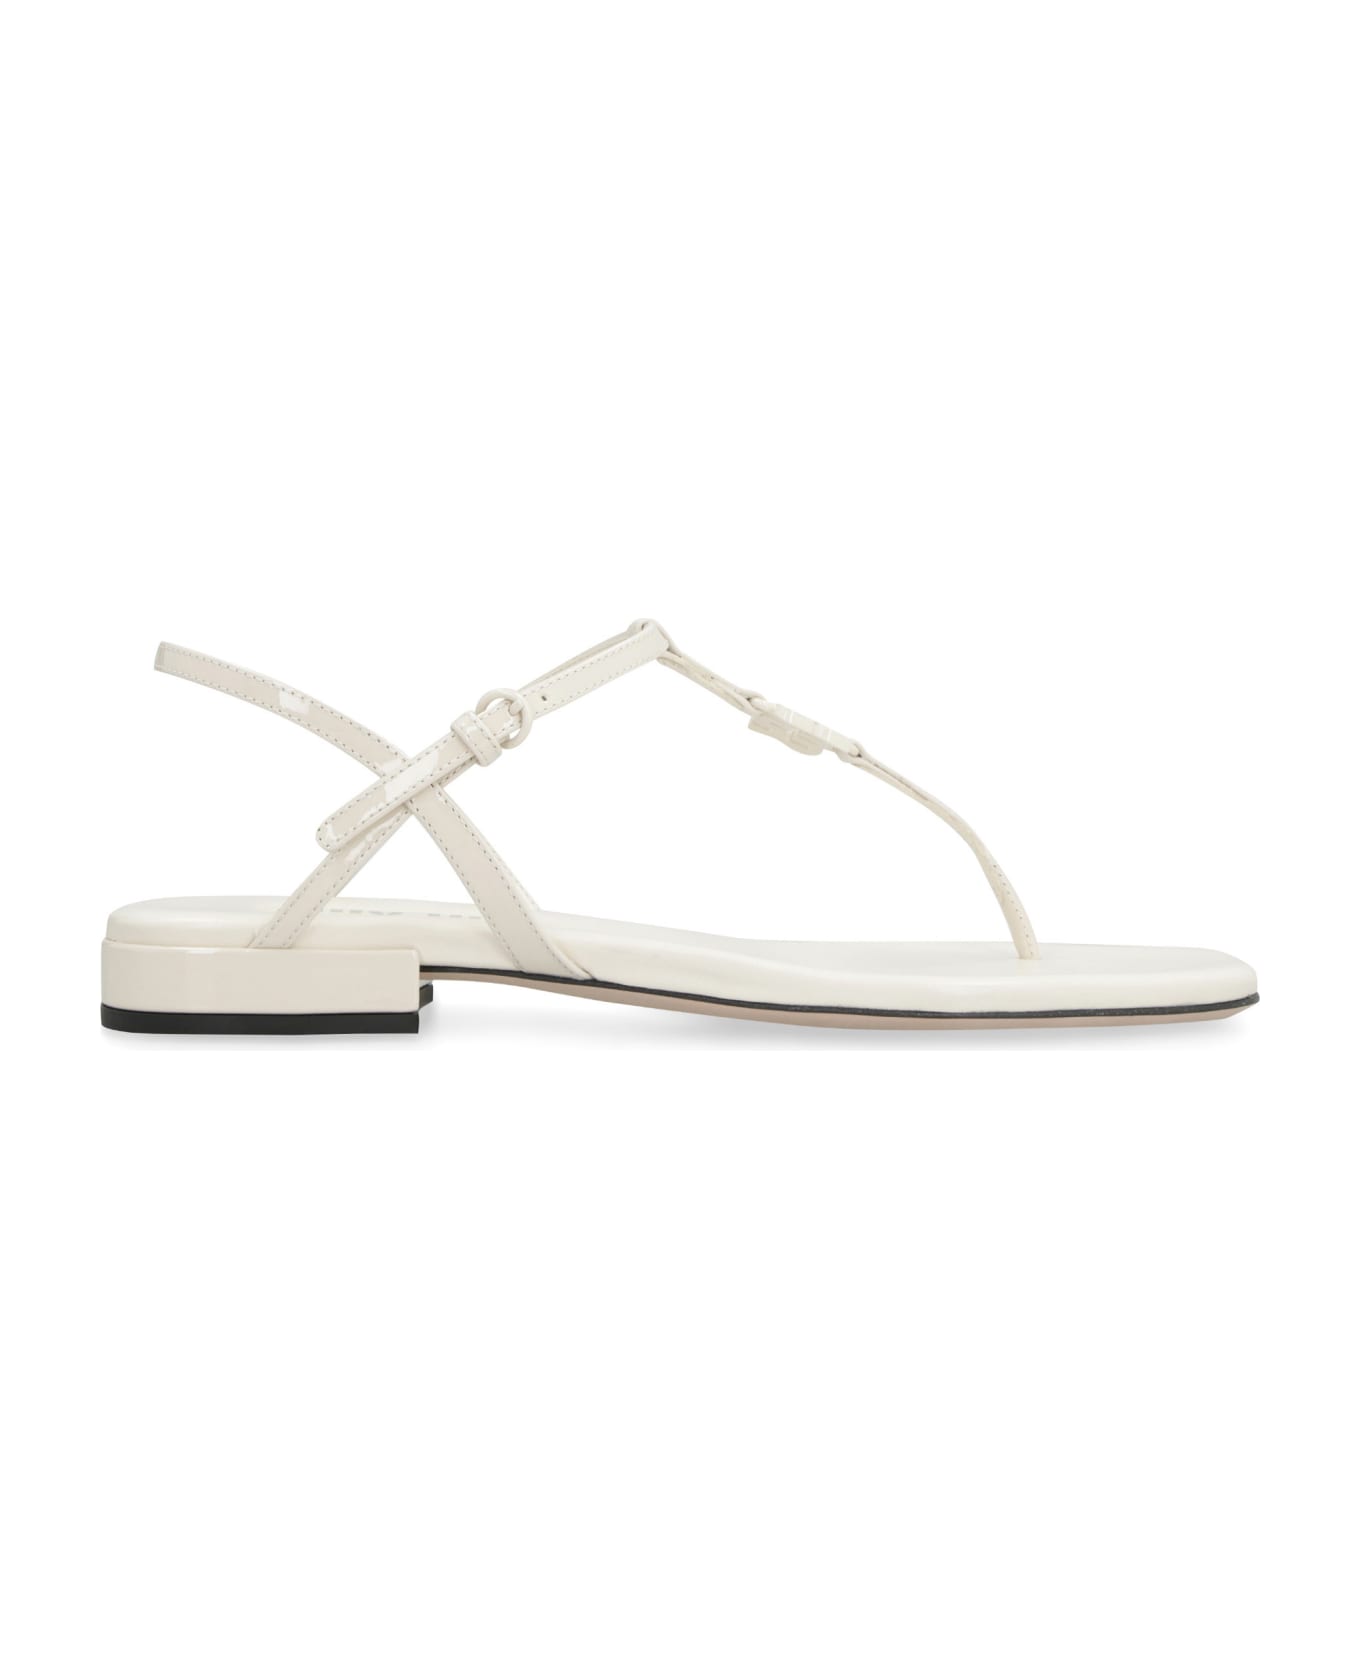 Miu Miu Leather Flat Sandals - White